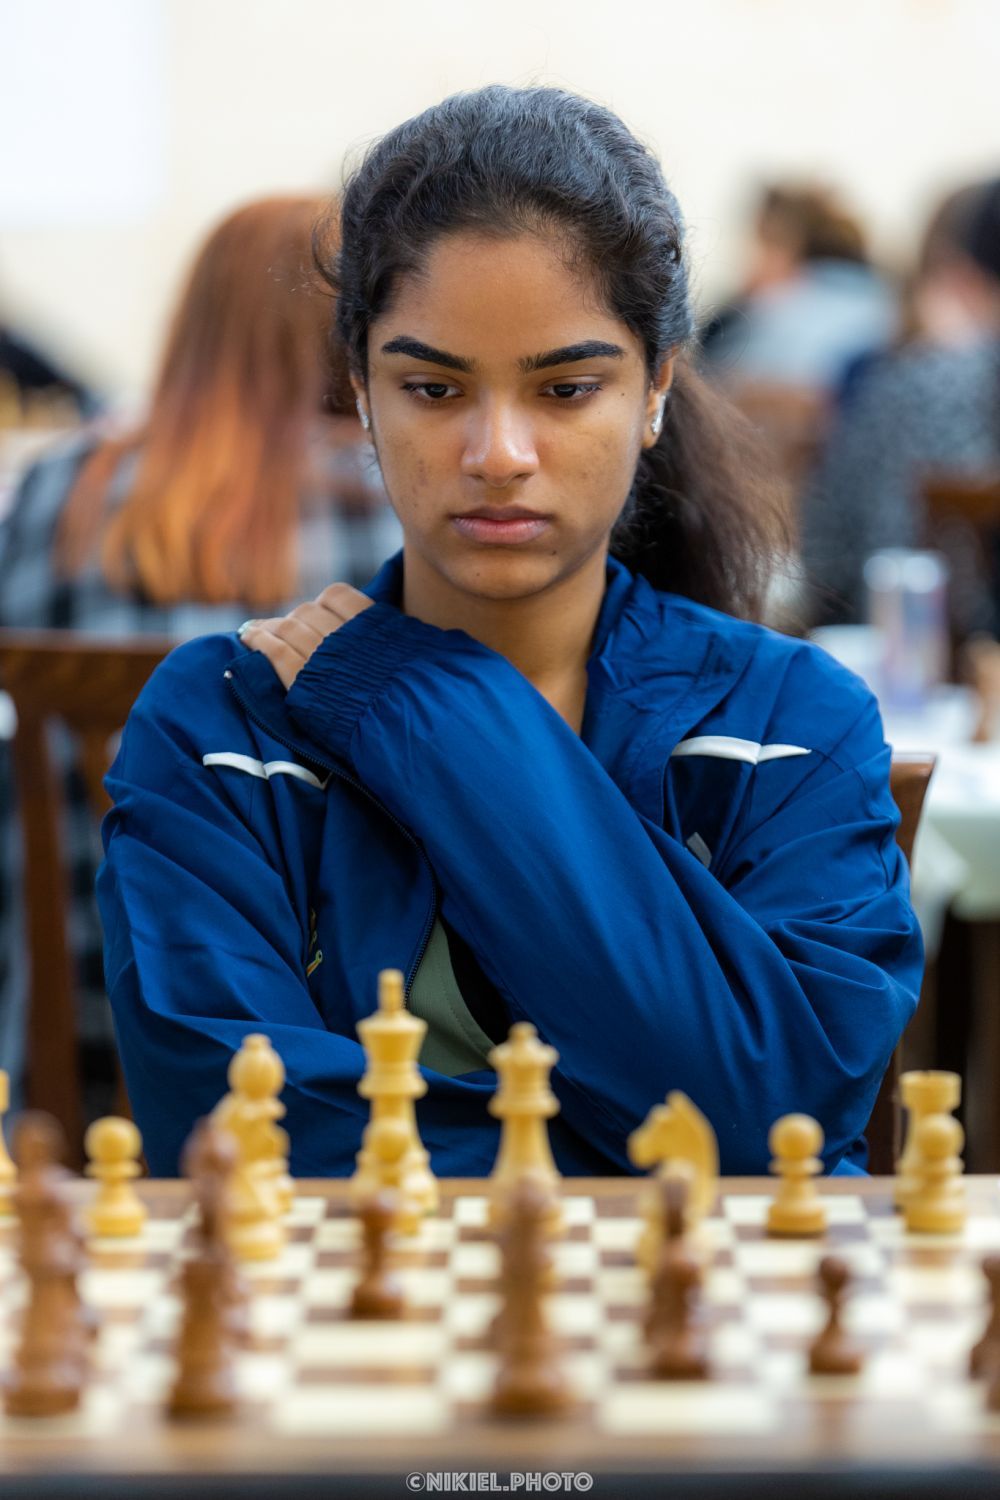 Indian Chess WGM Priyanka Nutakki Expelled From World Junior Tournament